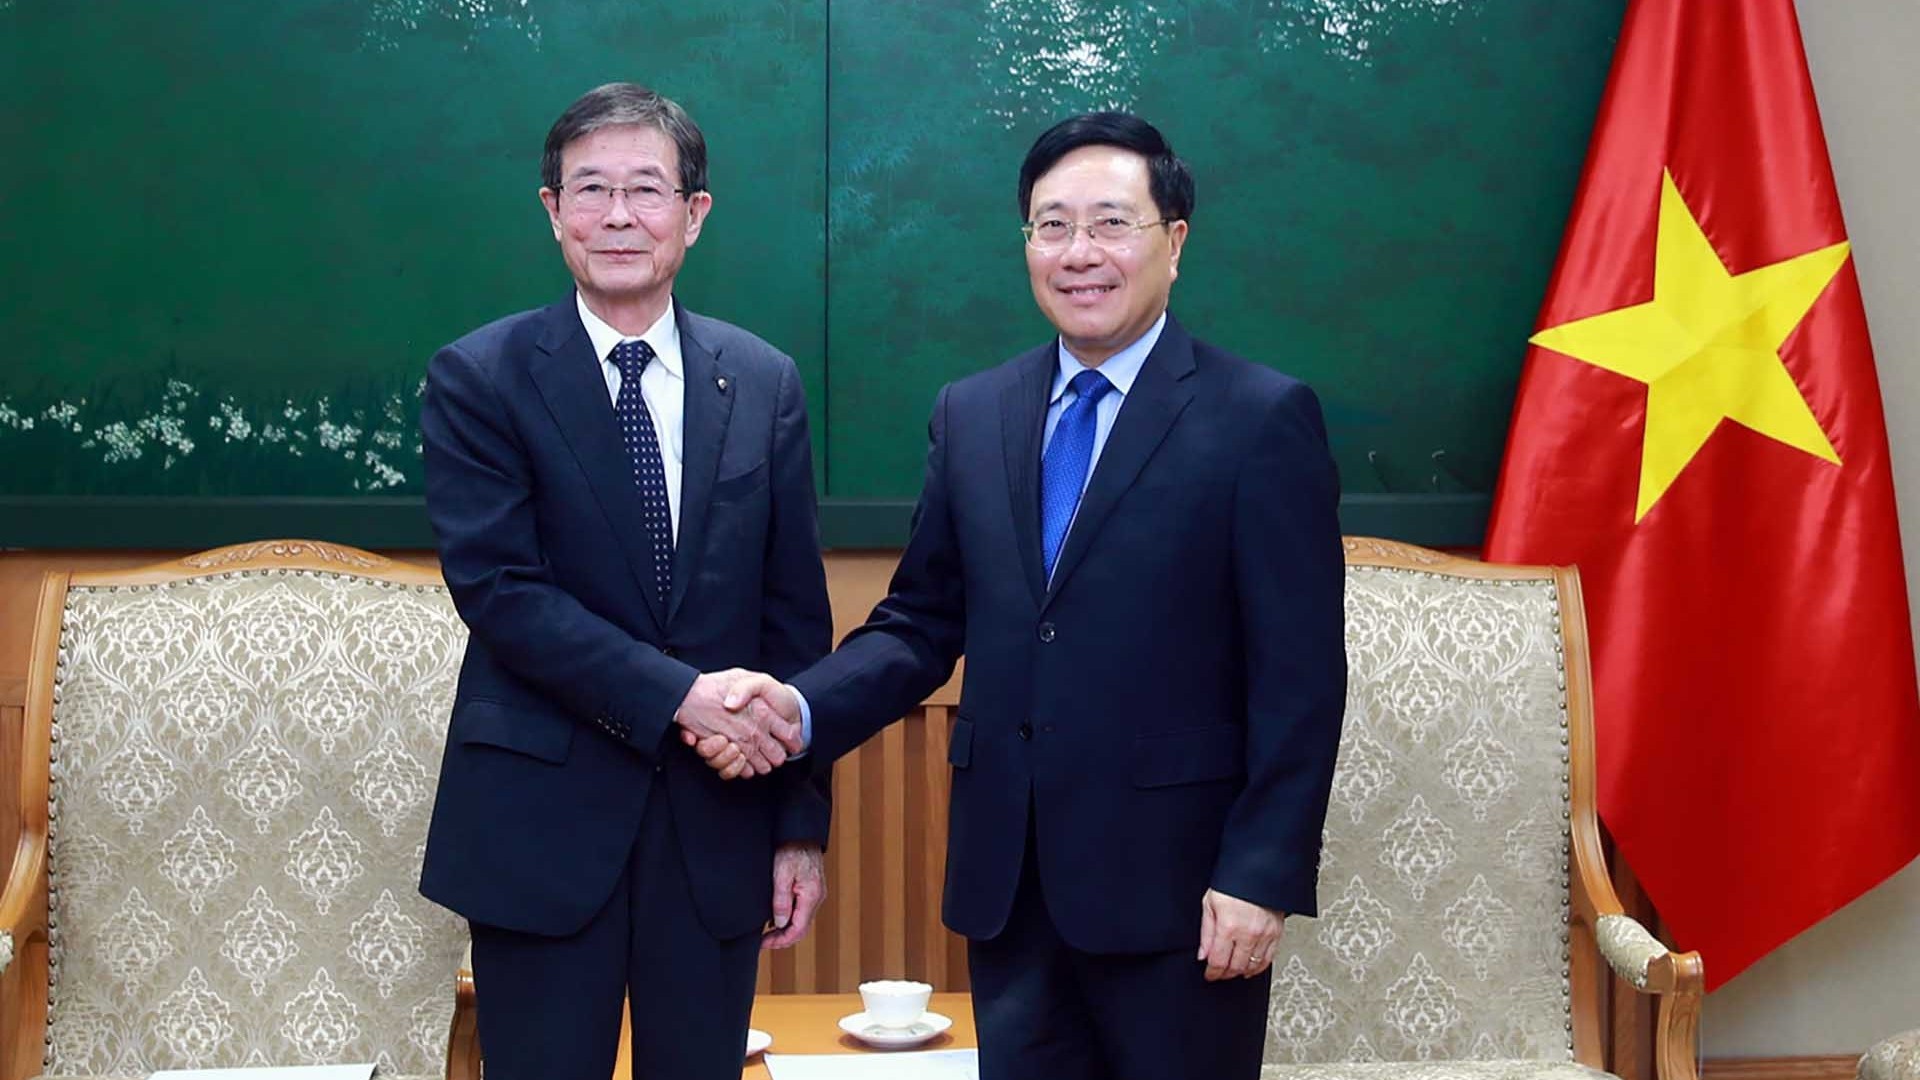 Tăng cường quan hệ hợp tác giữa các địa phương Việt Nam-Nhật Bản